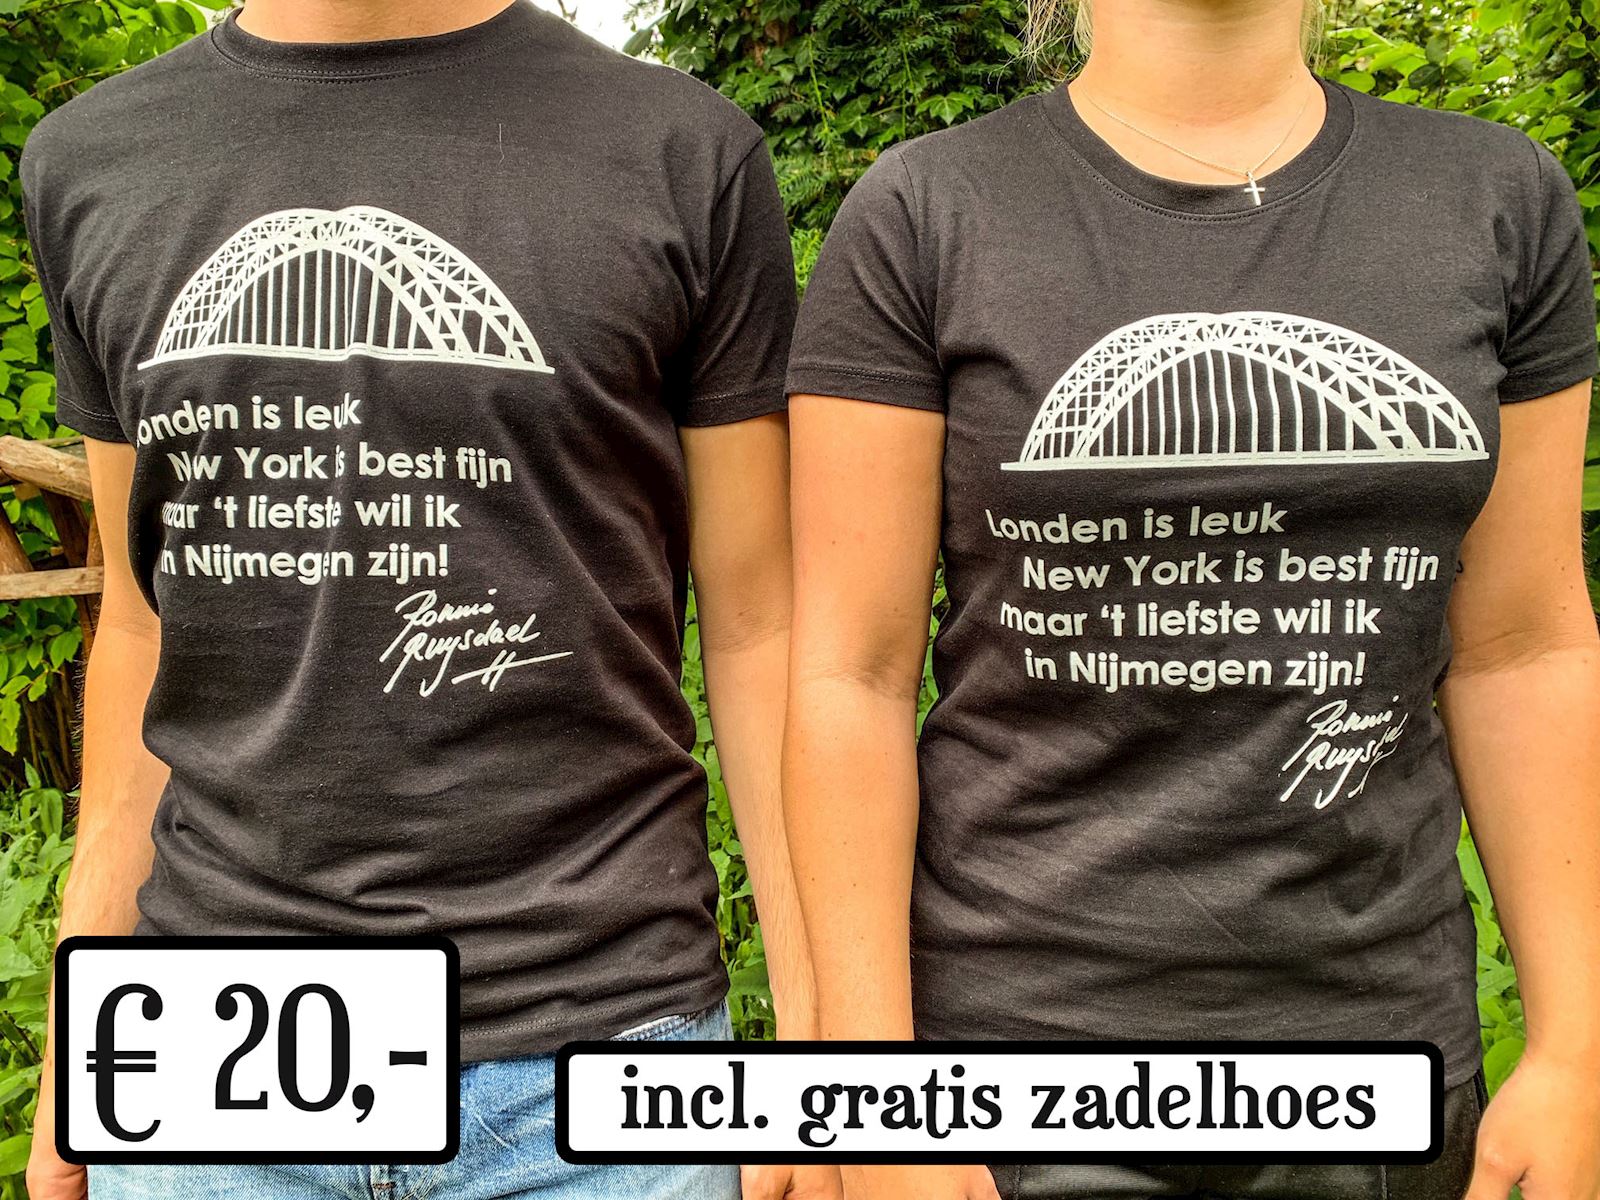 Ronnie_Ruysdael_Nijmegen_Shirt